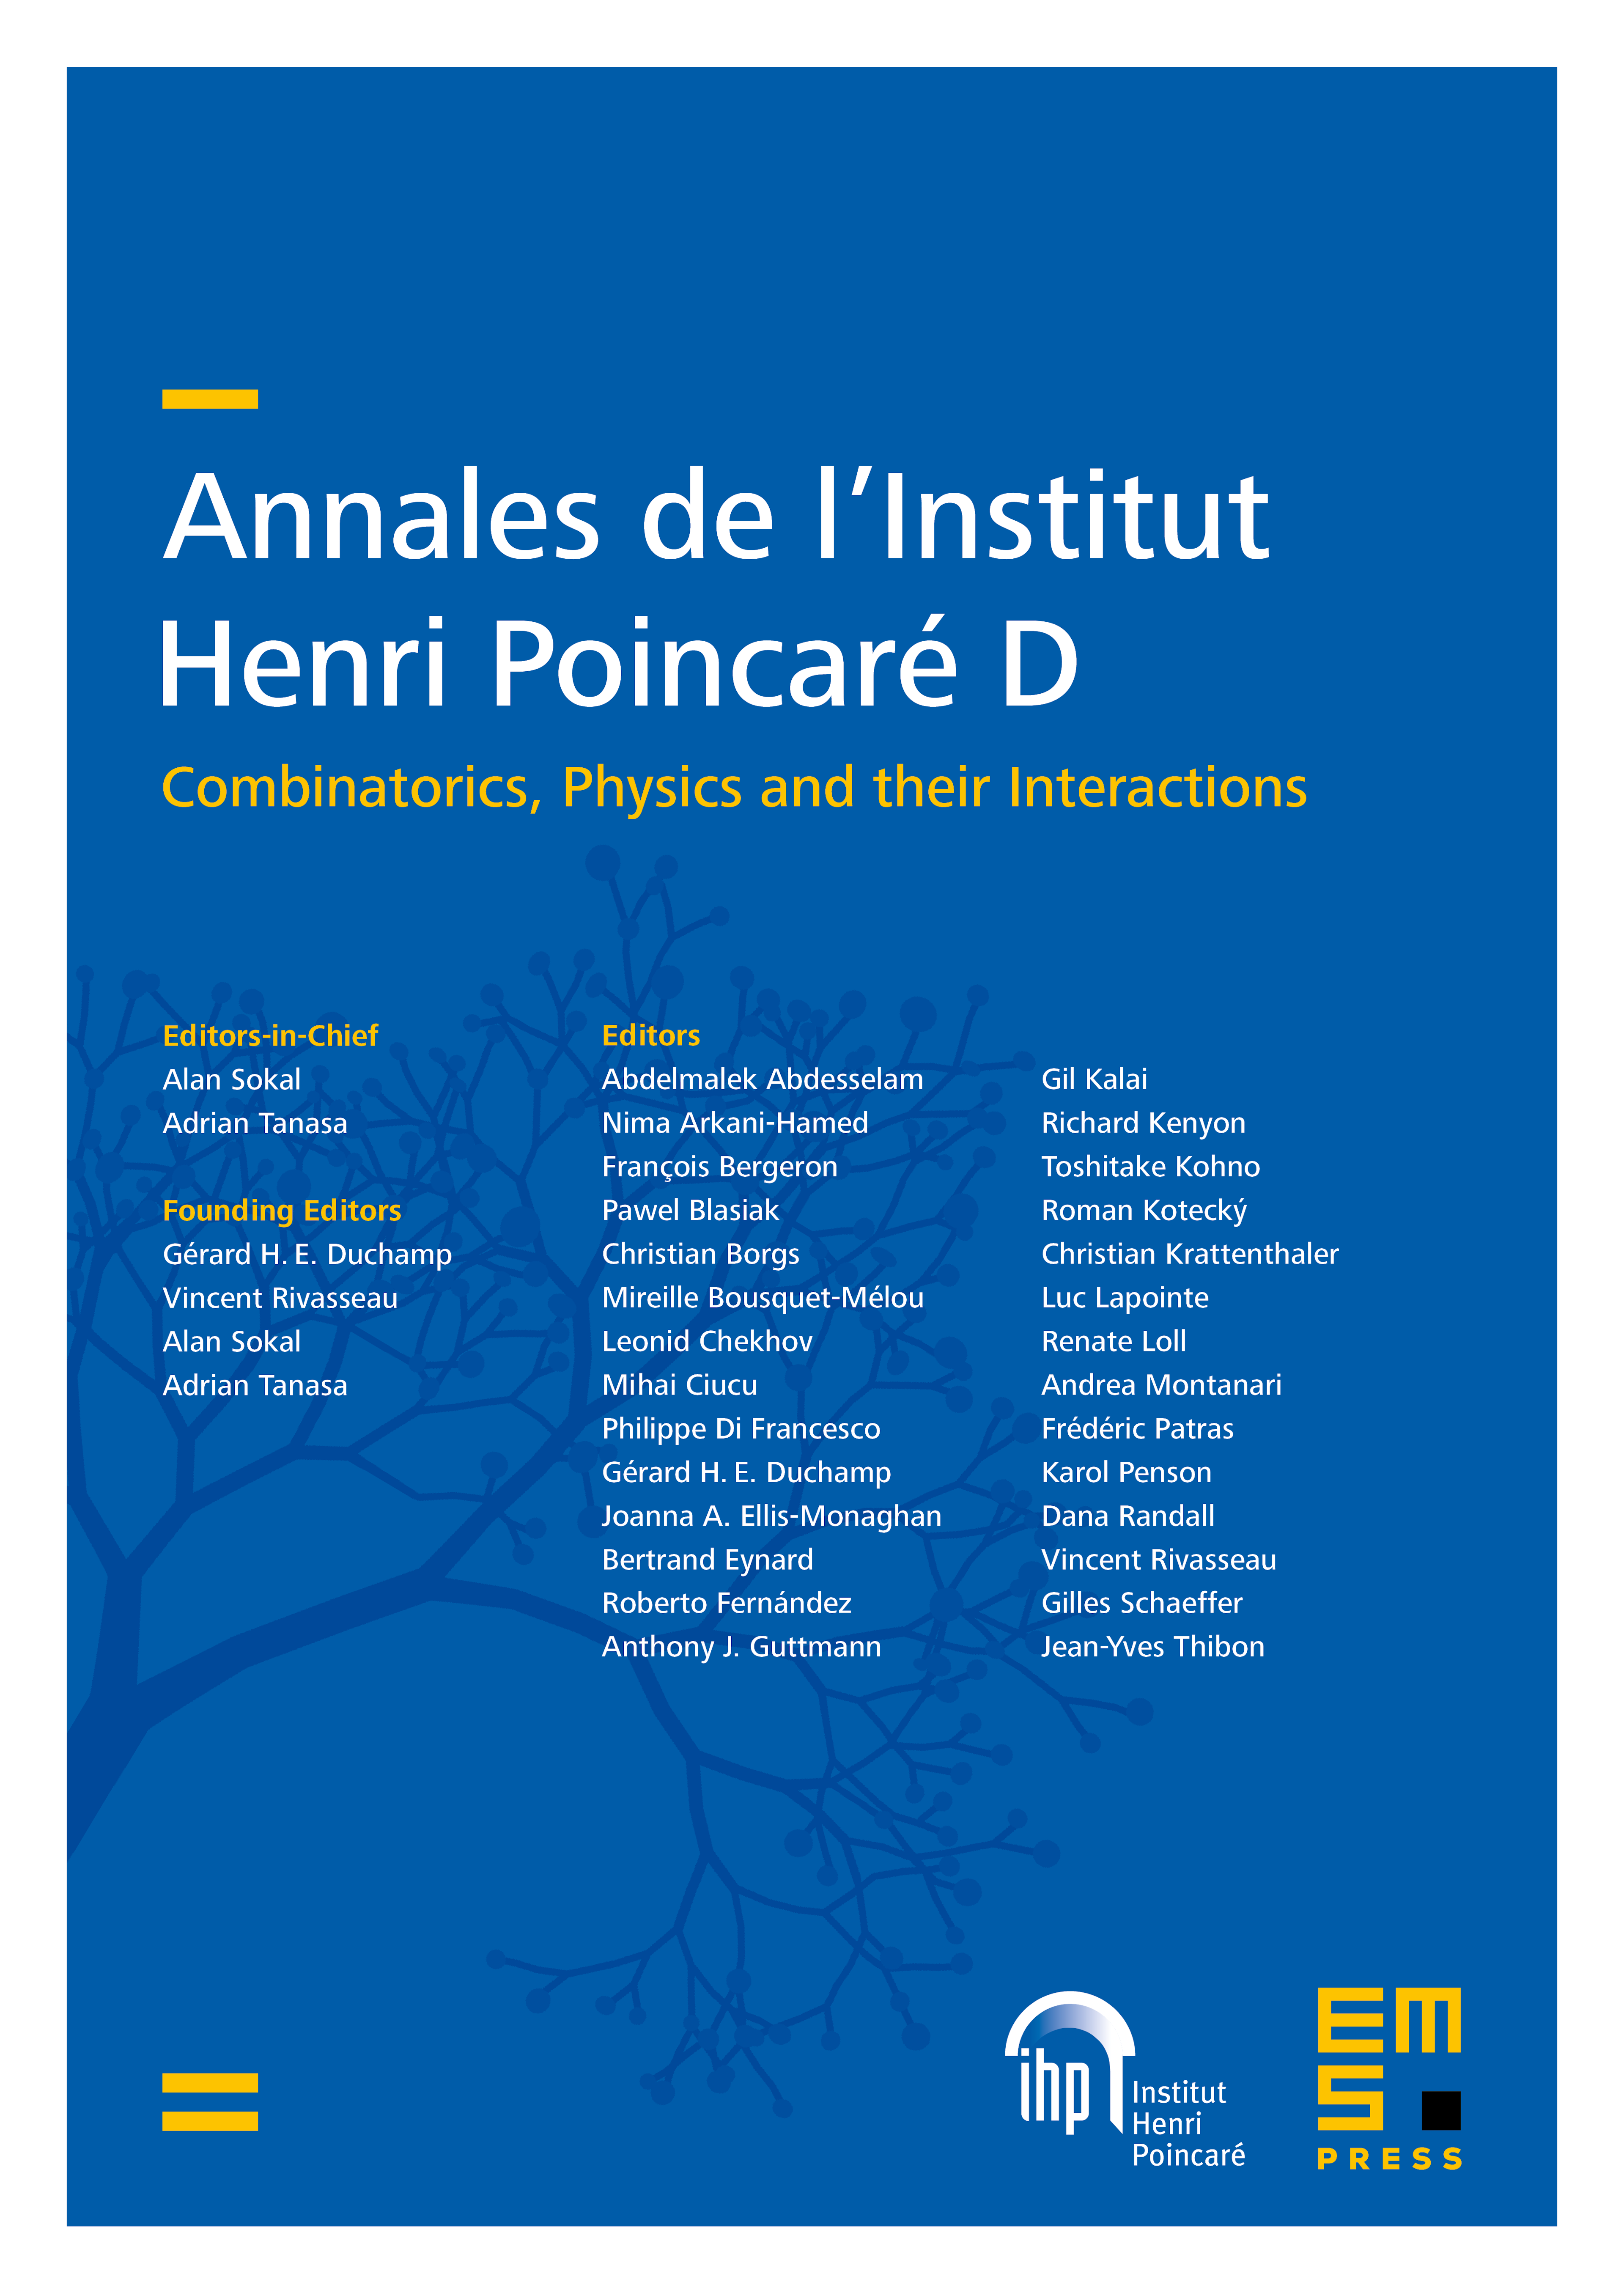 Ann. Inst. Henri Poincaré Comb. Phys. Interact. cover